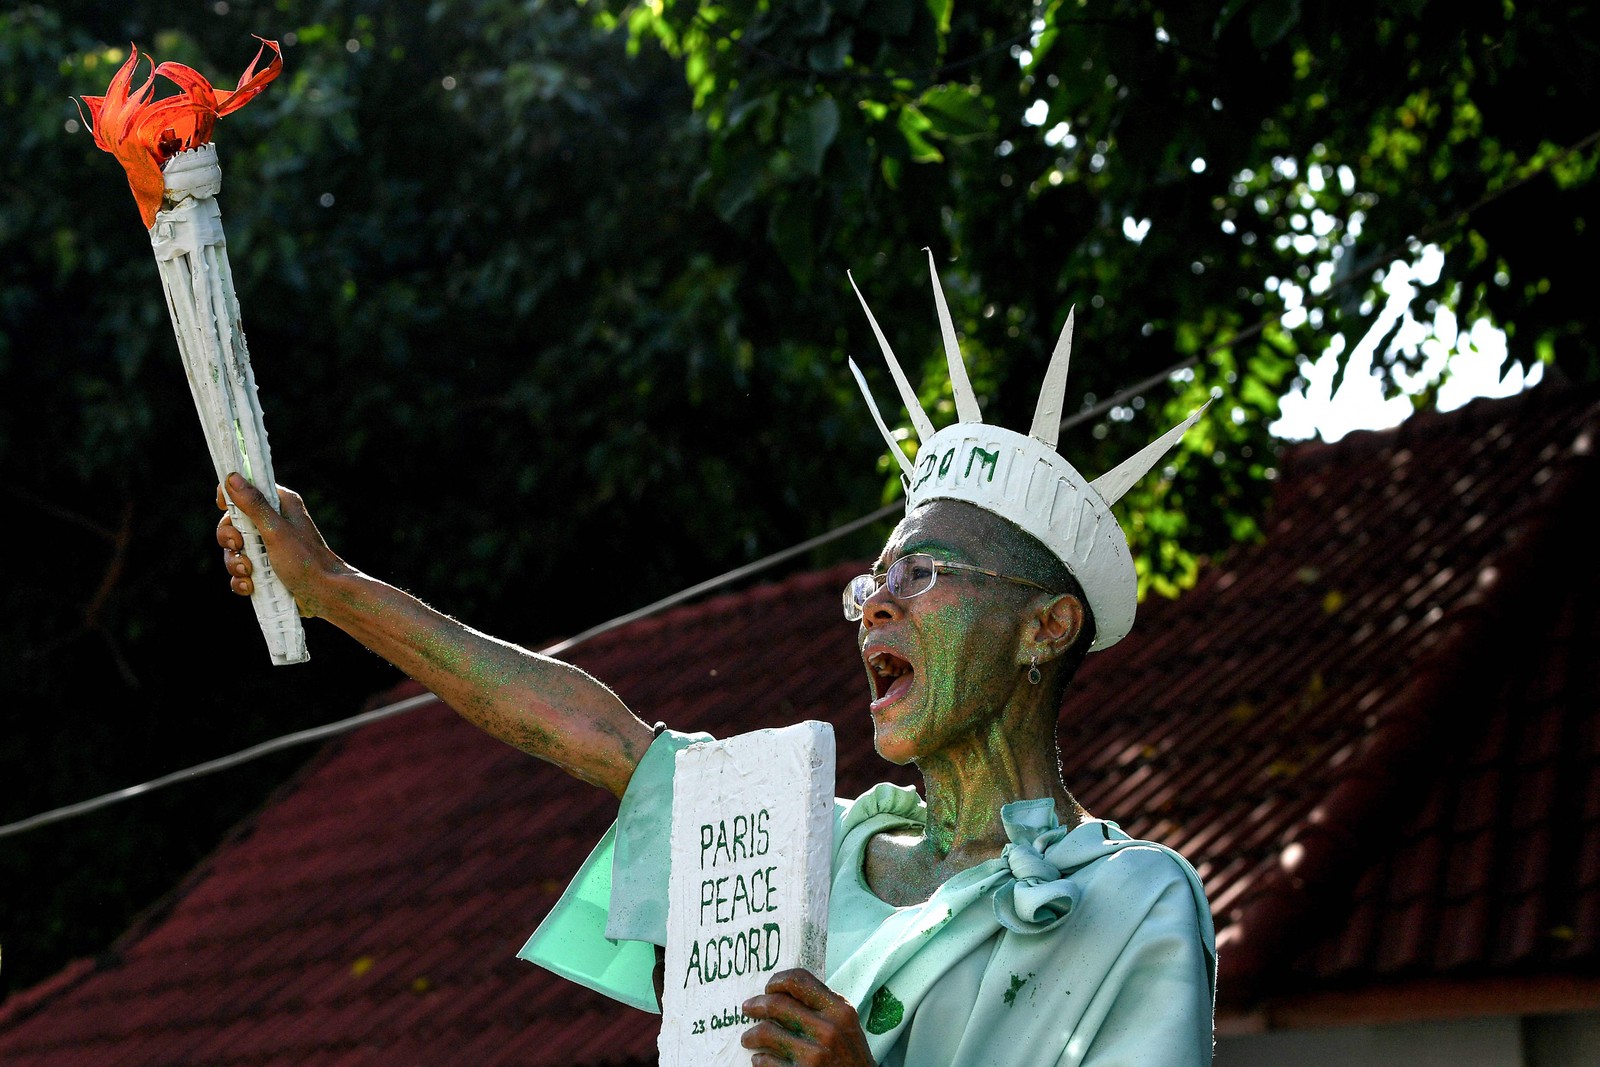 Defensora dos direitos humanos, Theary Seng, veste-se de estátua de liberdade para protestar contra condenação em frente ao tribunal municipal de Phnom Penh, Camboja. Ela, que também é advogada e cidadã dos EUA, faz oposição ao primeiro-ministro Hun Sen, que está no poder desde 1998  — Foto: TANG CHHIN SOTHY / AFP